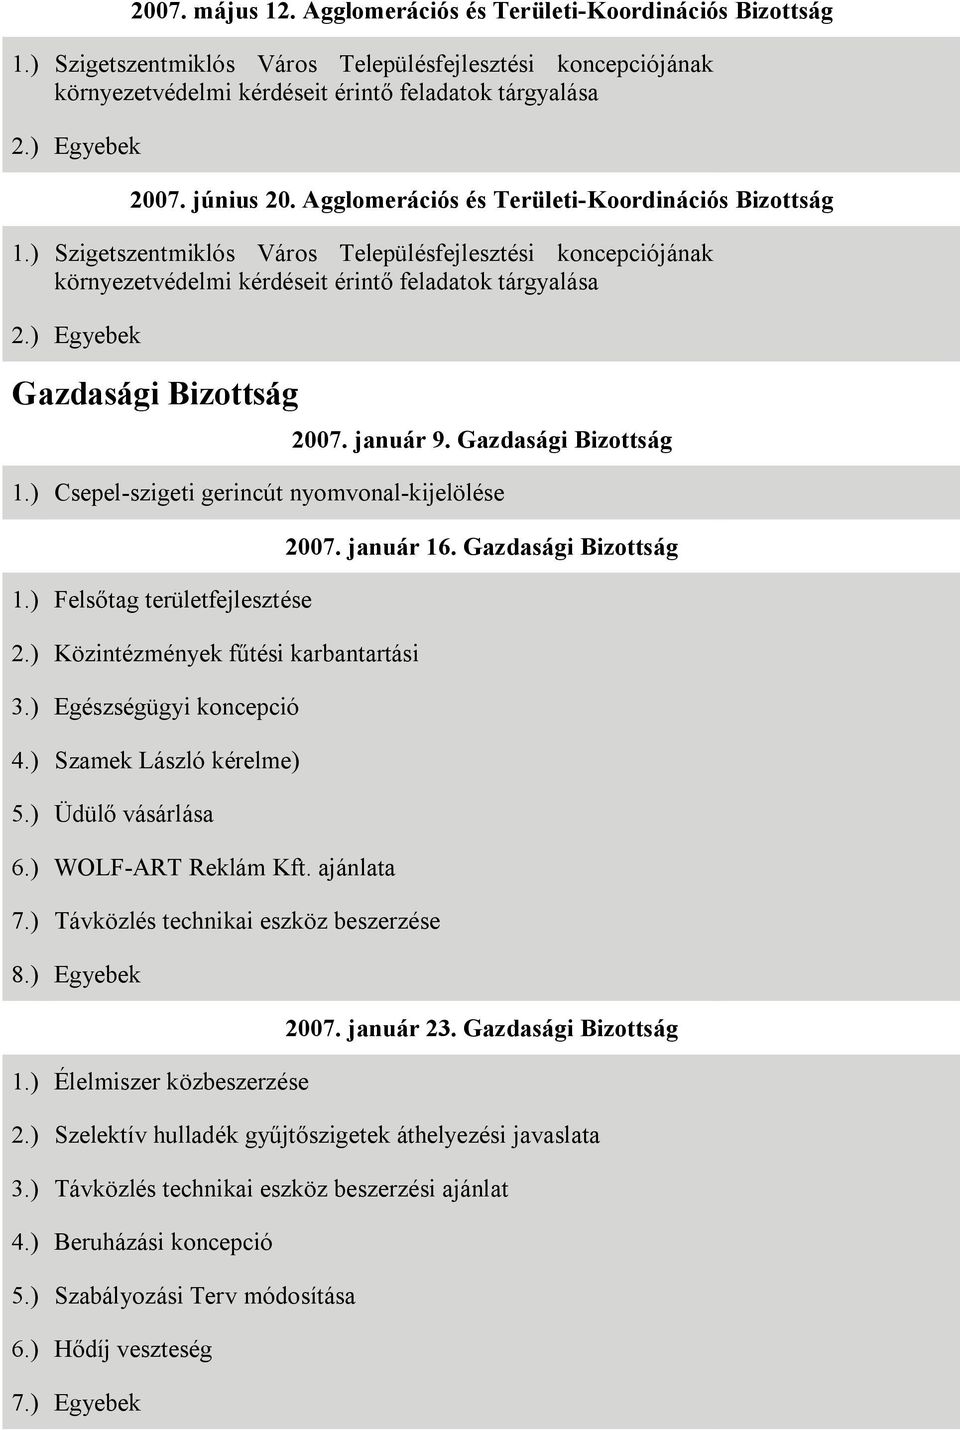 ) Egyebek Gazdasági Bizottság 2007. január 9. Gazdasági Bizottság 1.) Csepel-szigeti gerincút nyomvonal-kijelölése 1.) Felsőtag területfejlesztése 2.) Közintézmények fűtési karbantartási 3.